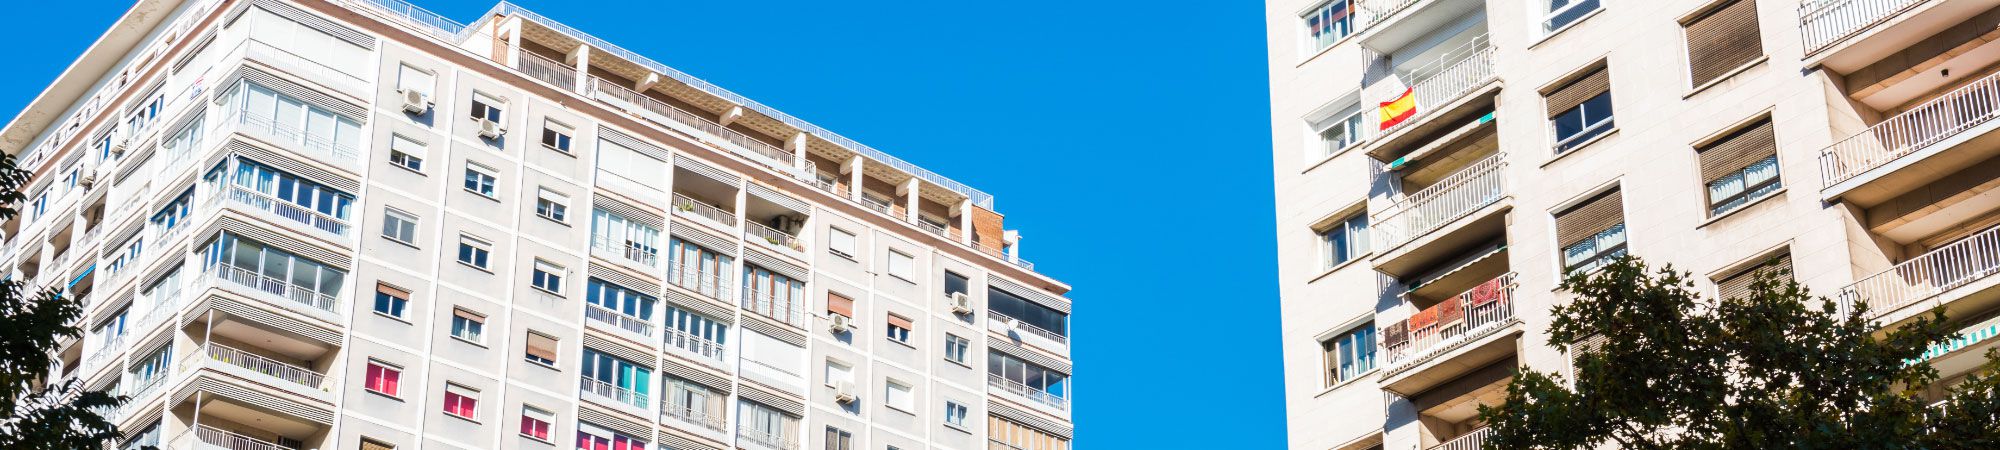 Amplia oferta de pisos, locales  . METODOO INMOBILIARIA en Sevilla